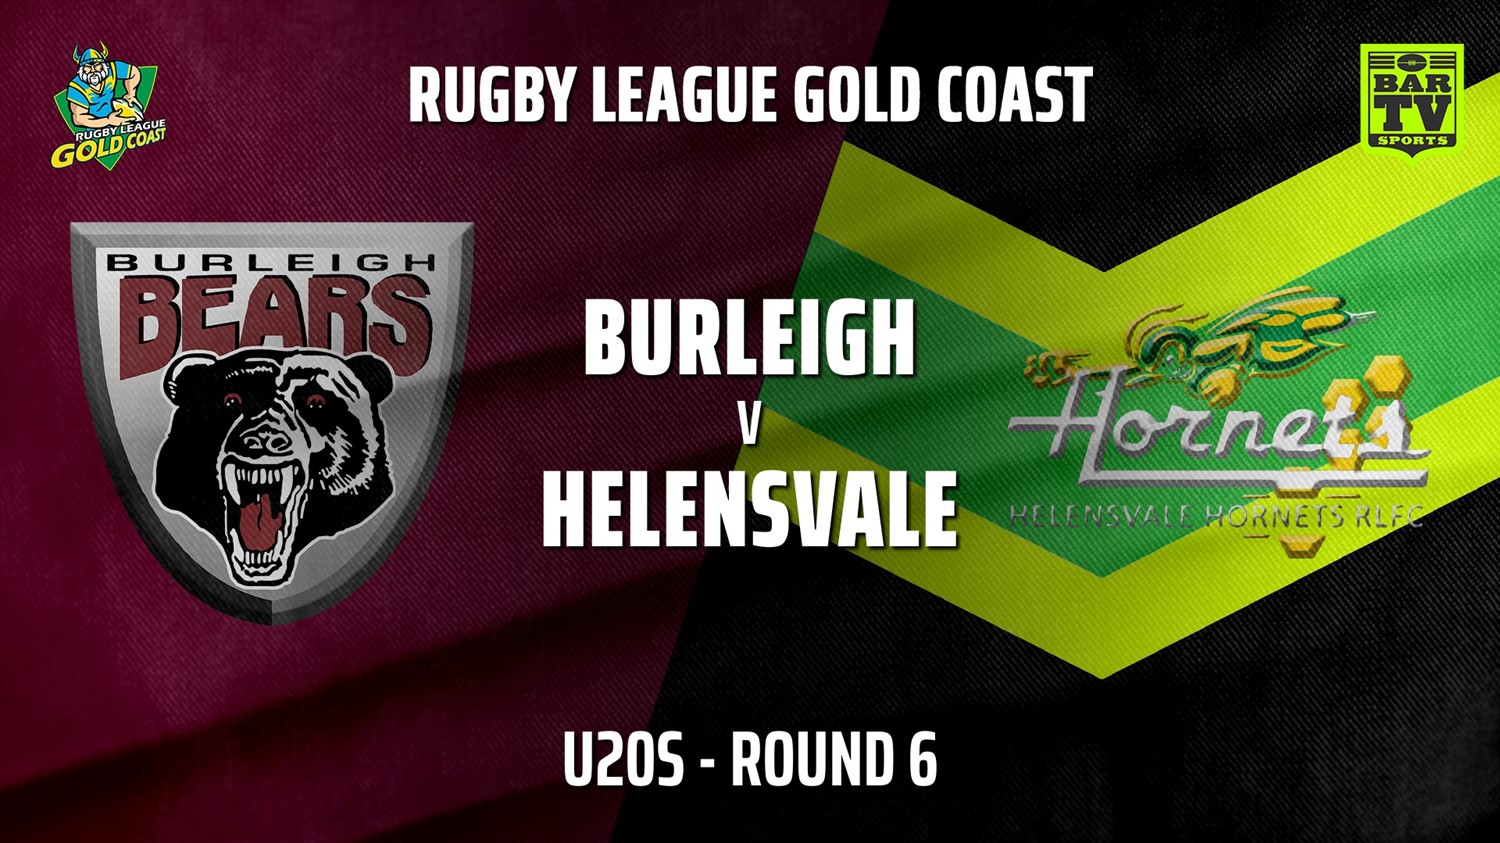 210611-Gold Coast Round 6 - U20s - Burleigh Bears v Helensvale Hornets Slate Image